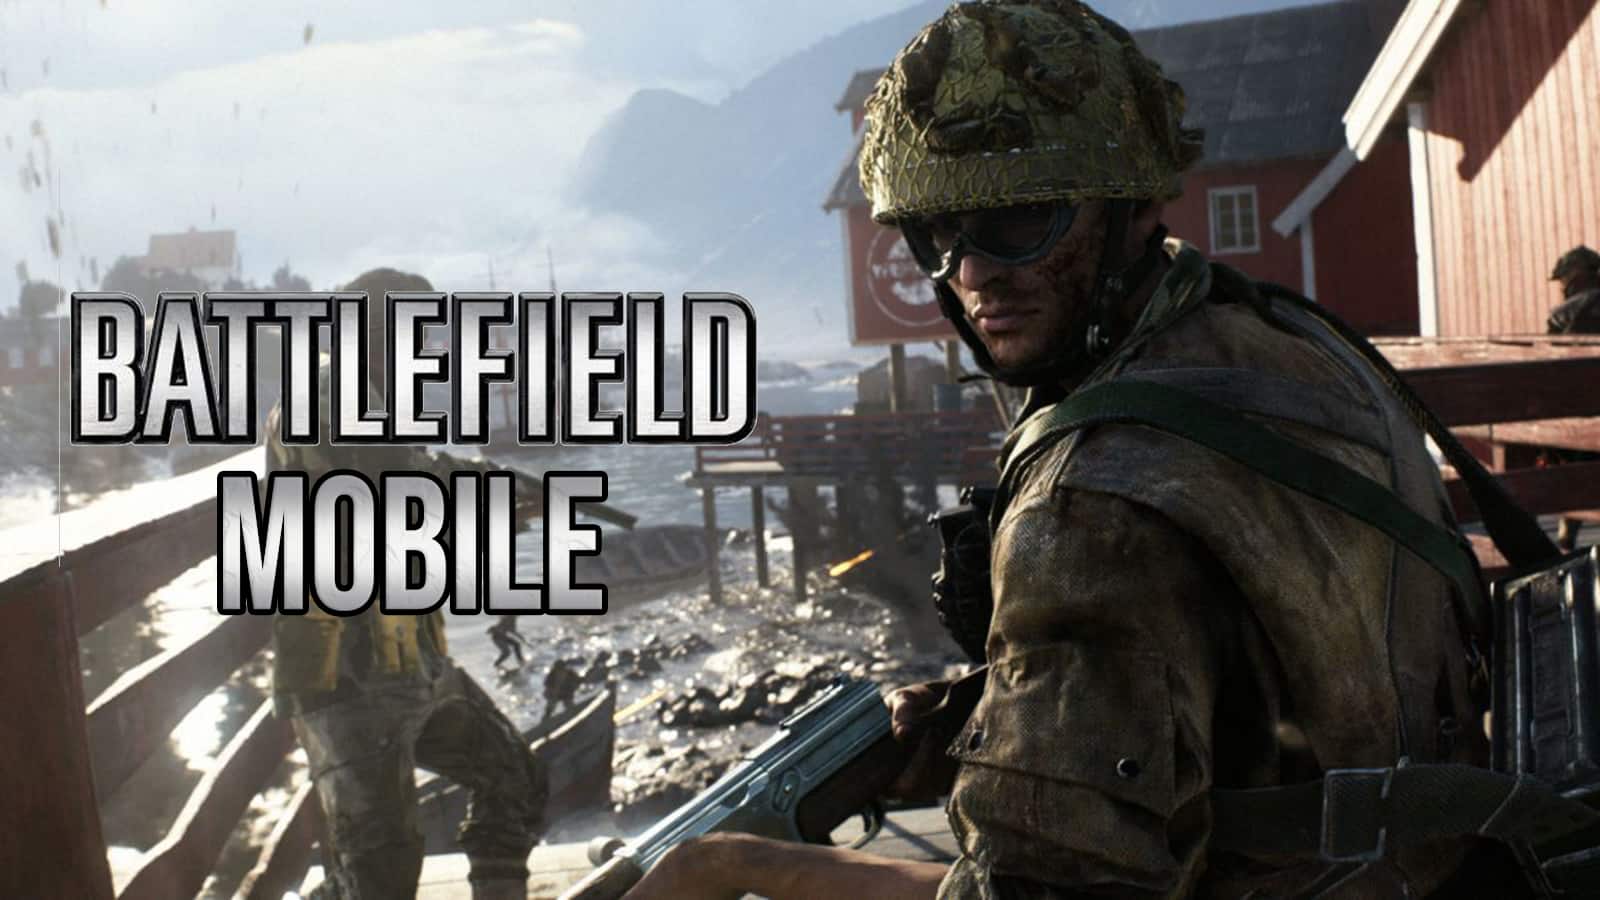 Battlefield Mobile release date